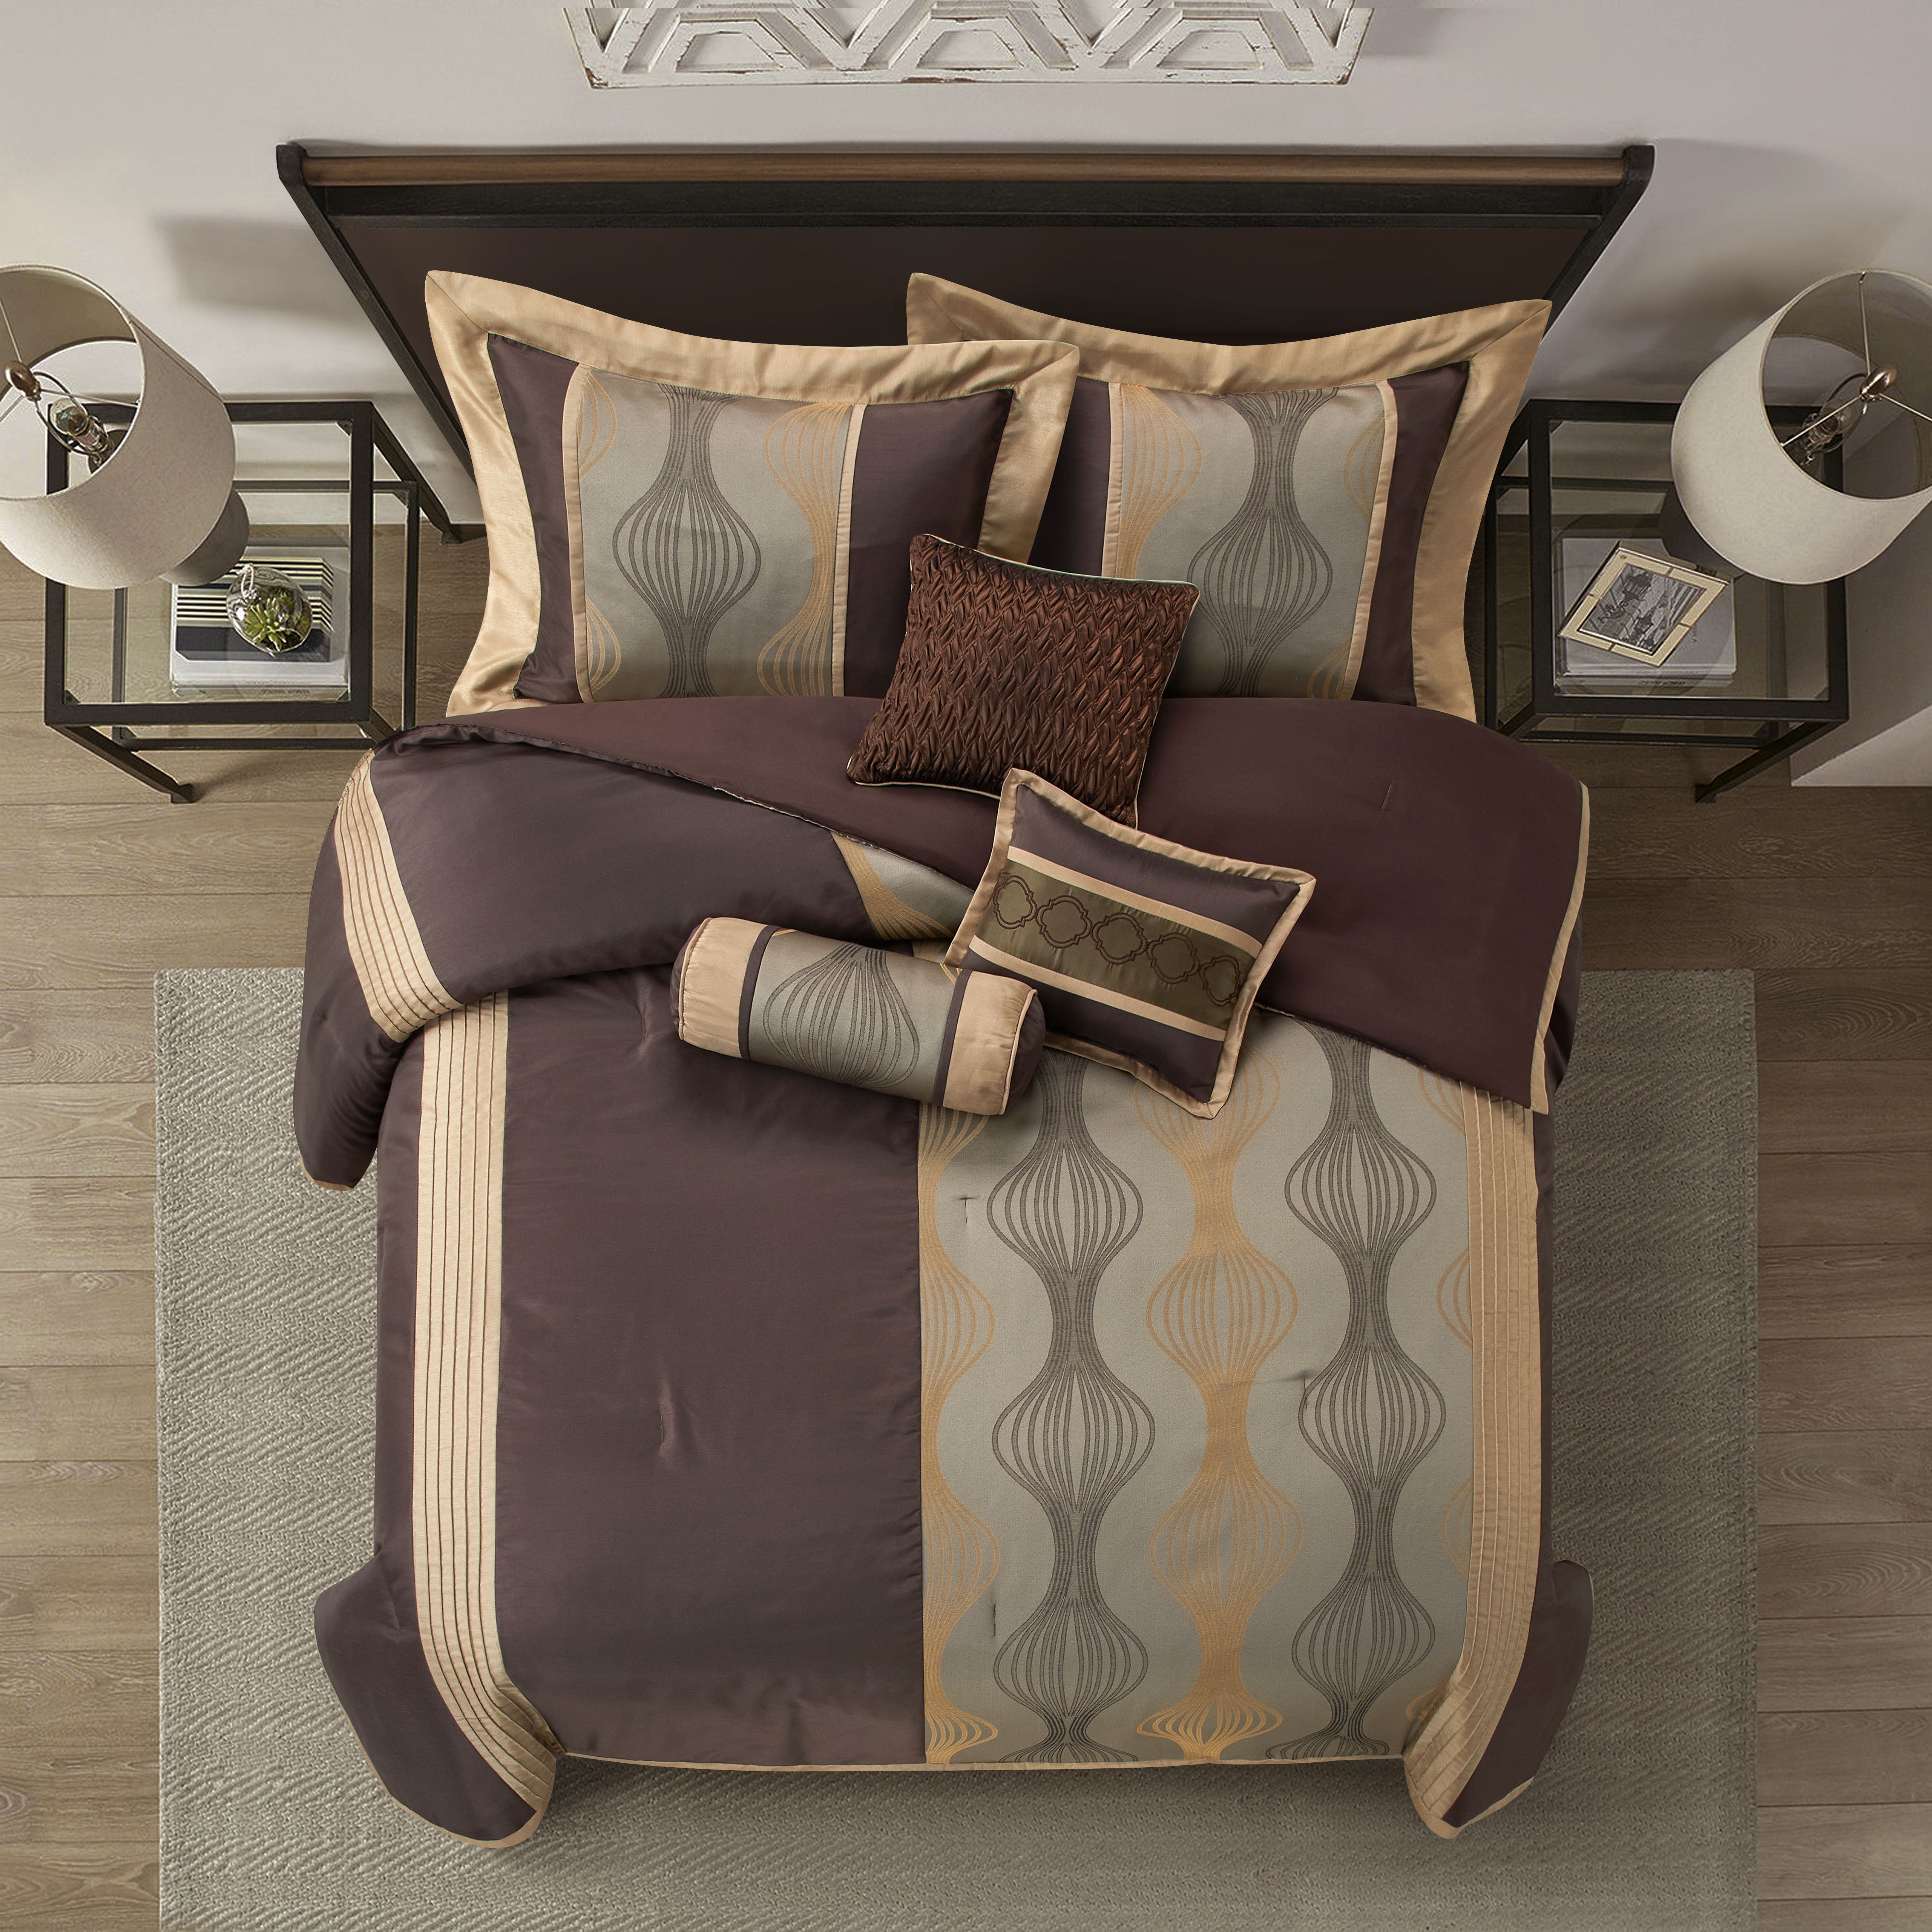 Cedar 7 Piece bed in a bag Comforter Set and Sheet Set Gray & Navy Queen,  Queen - Fry's Food Stores